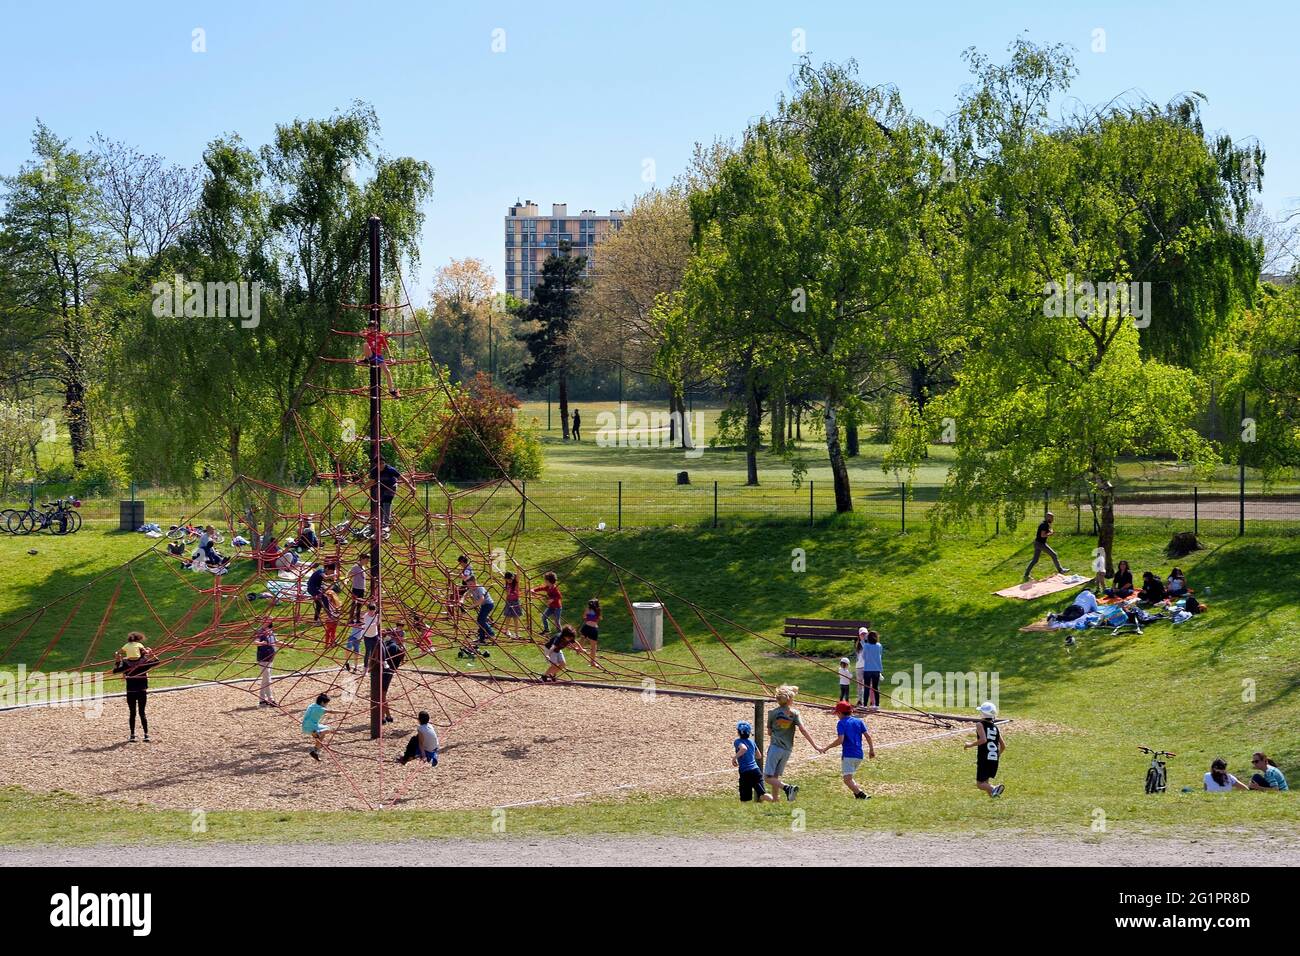 France, Val de Marne, Champigny sur Marne, parc du Tremblay, children's  play area Stock Photo - Alamy